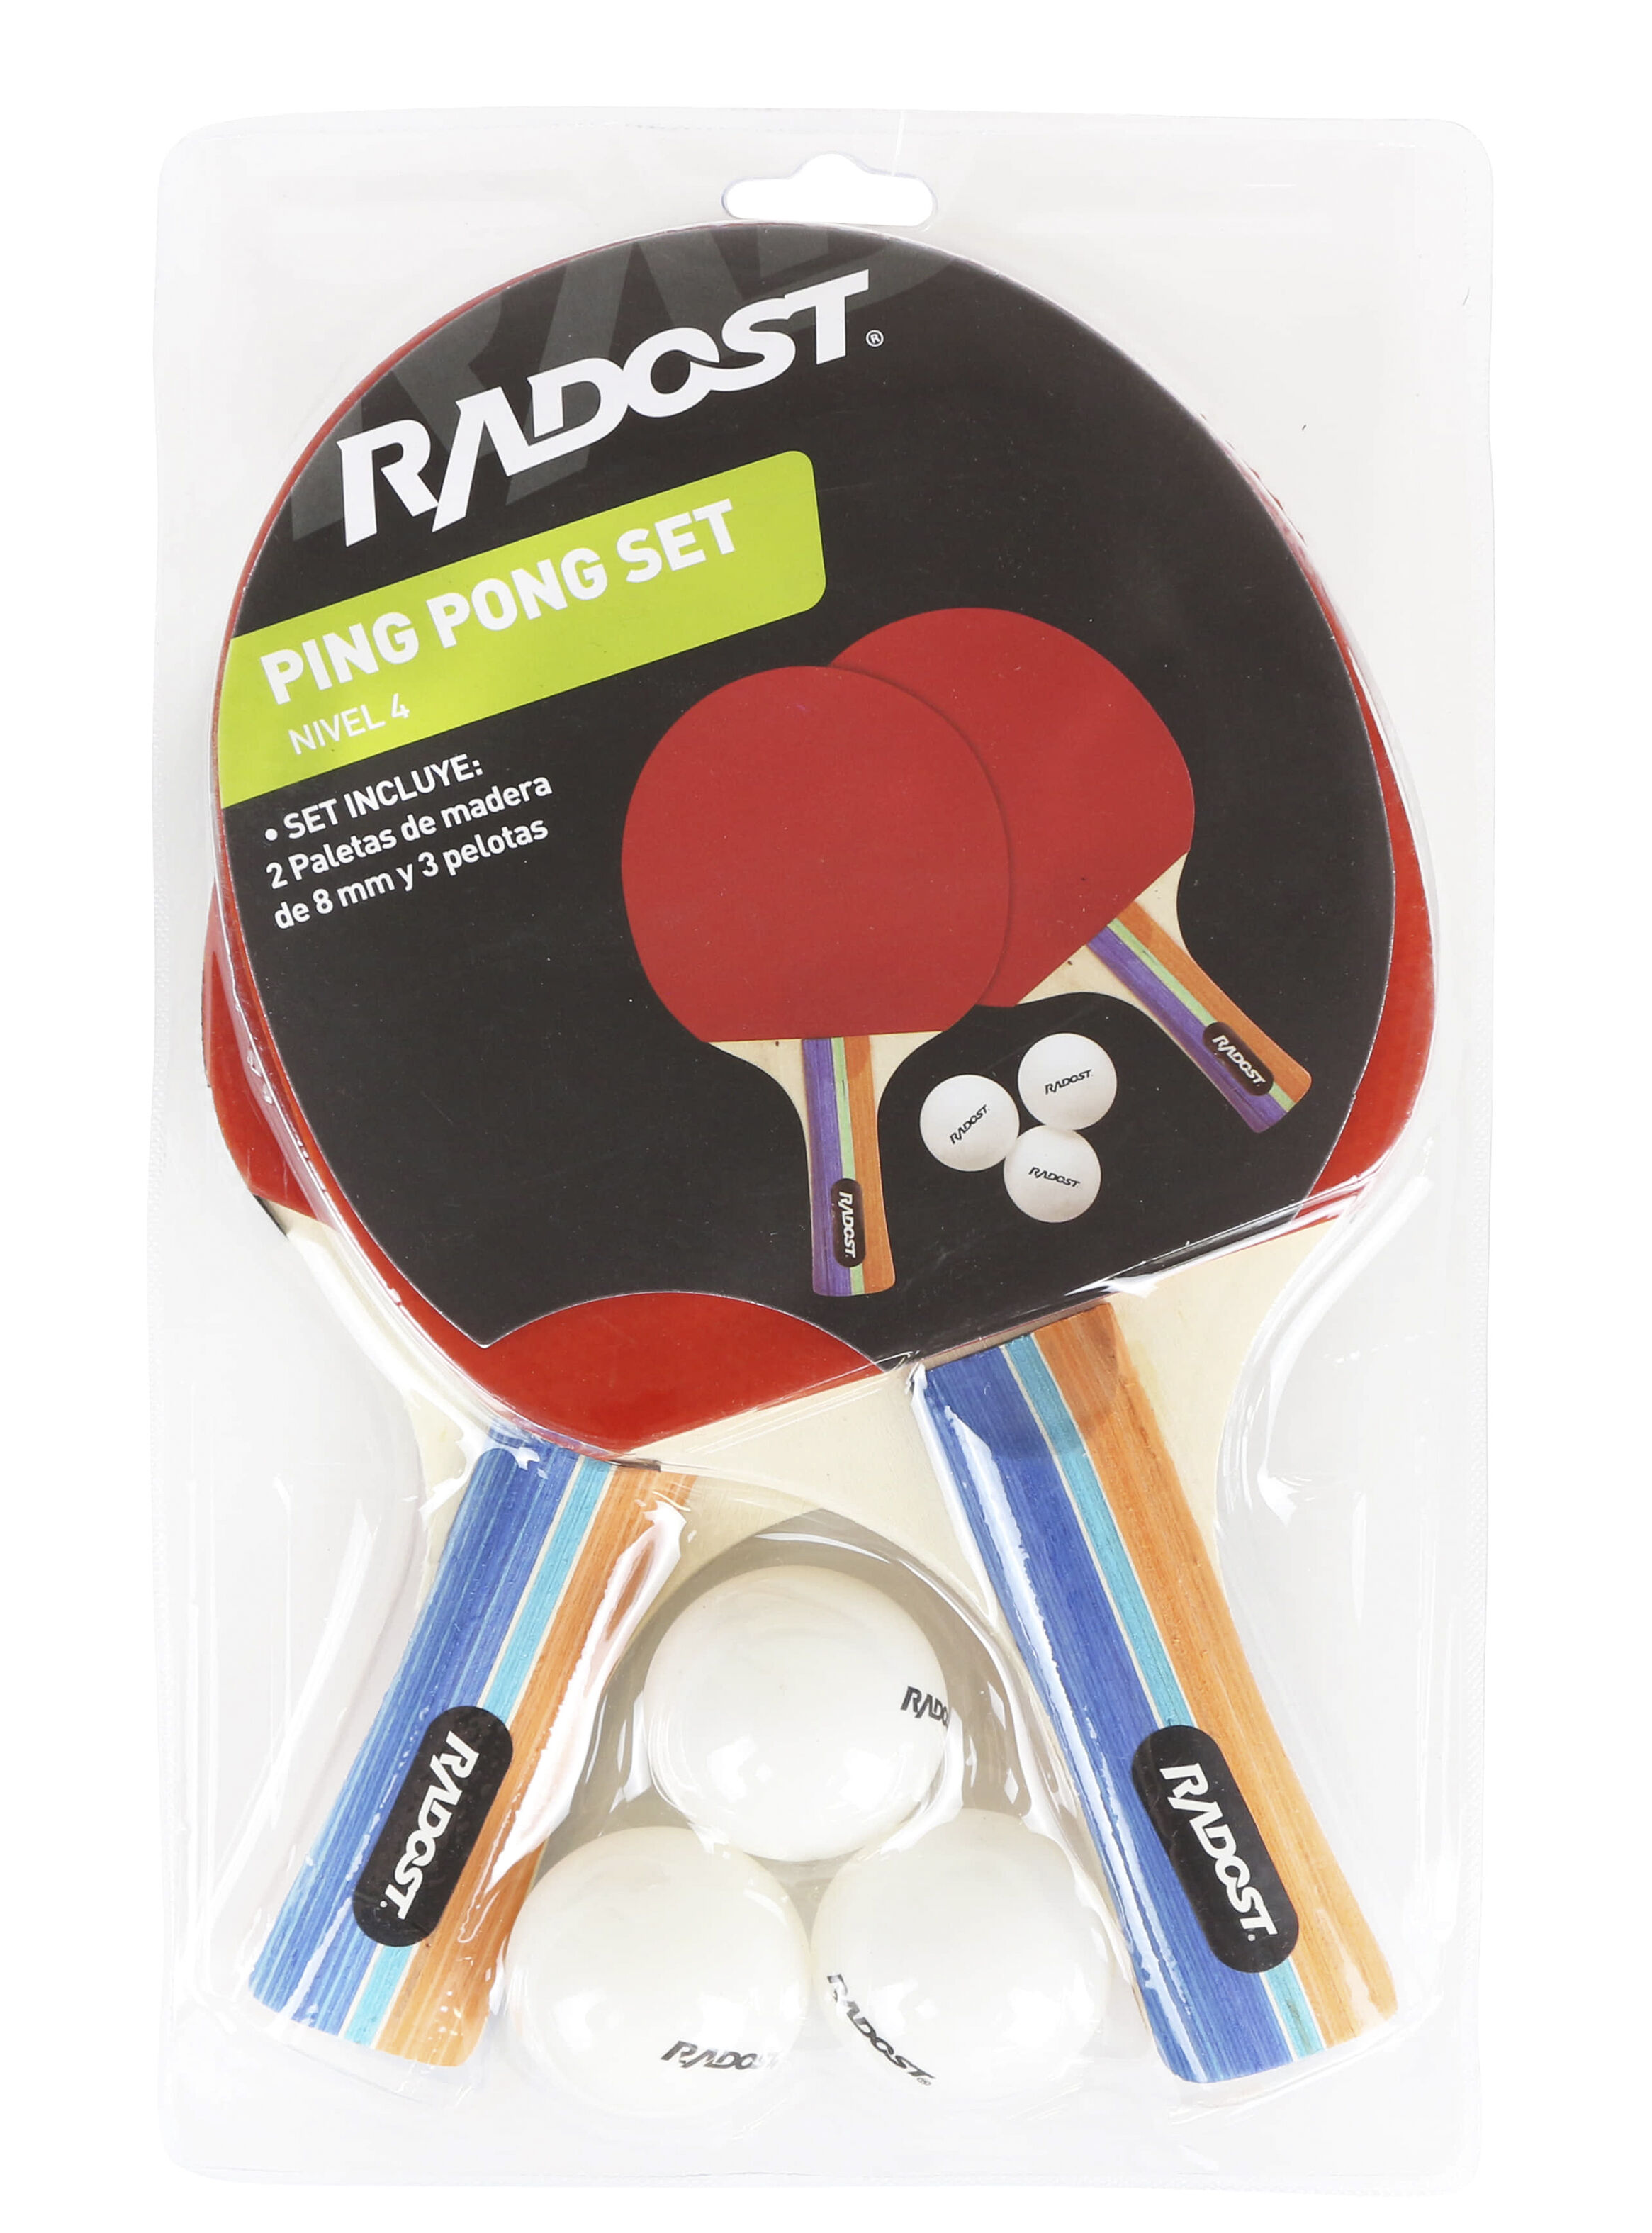 Paleta Radost de Ping Pong con Pelotas 4 Estre